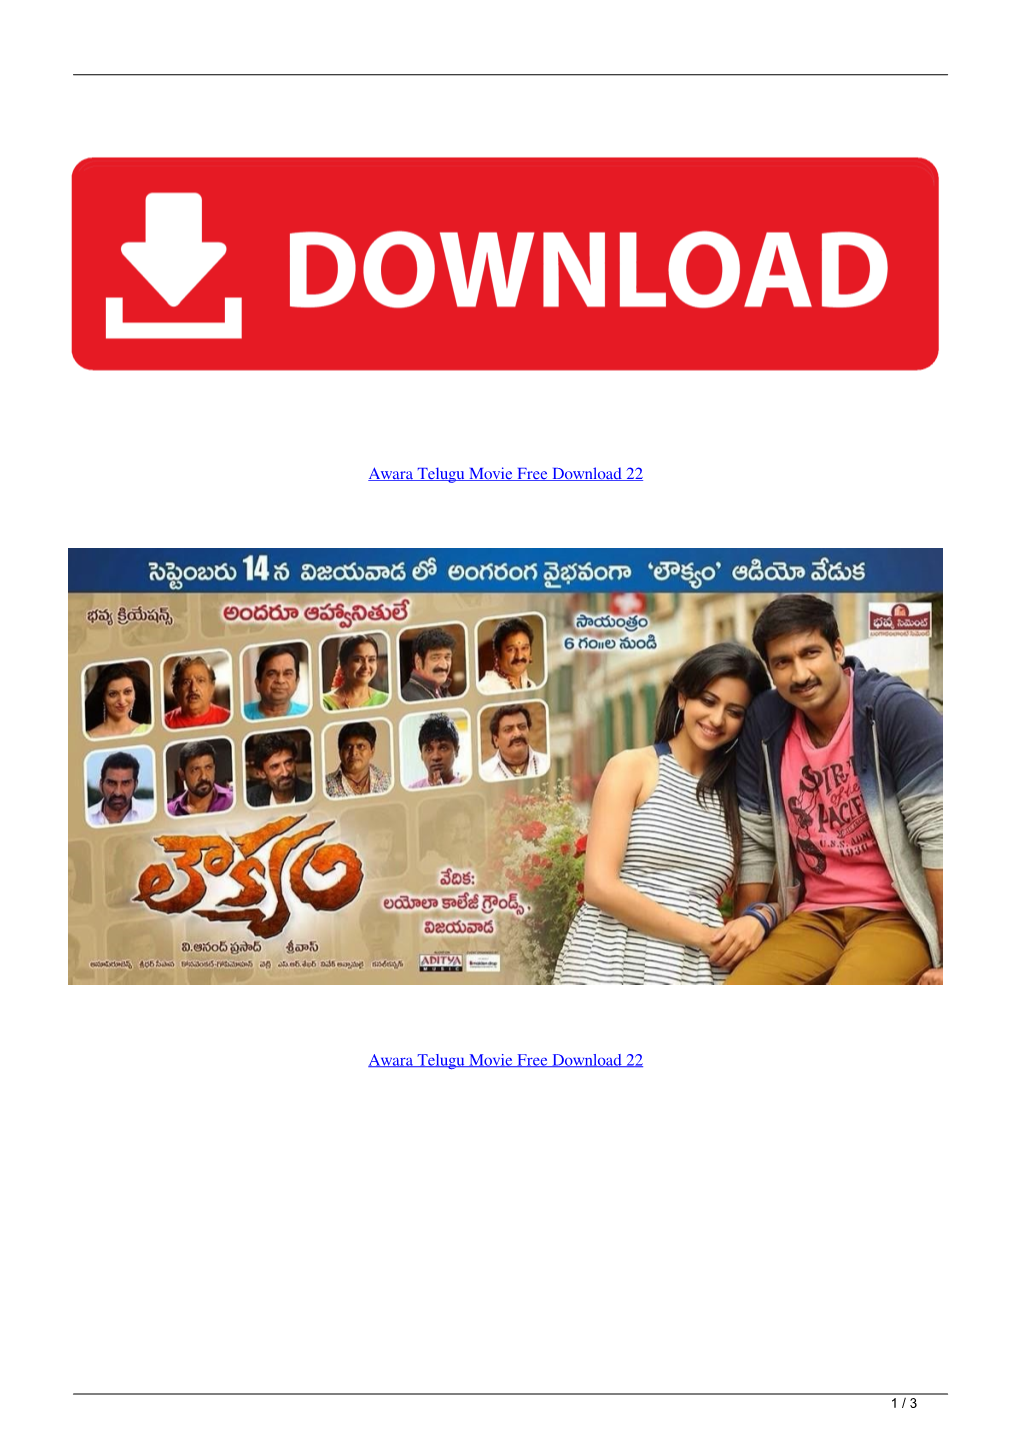 Awara Telugu Movie Free Download 22